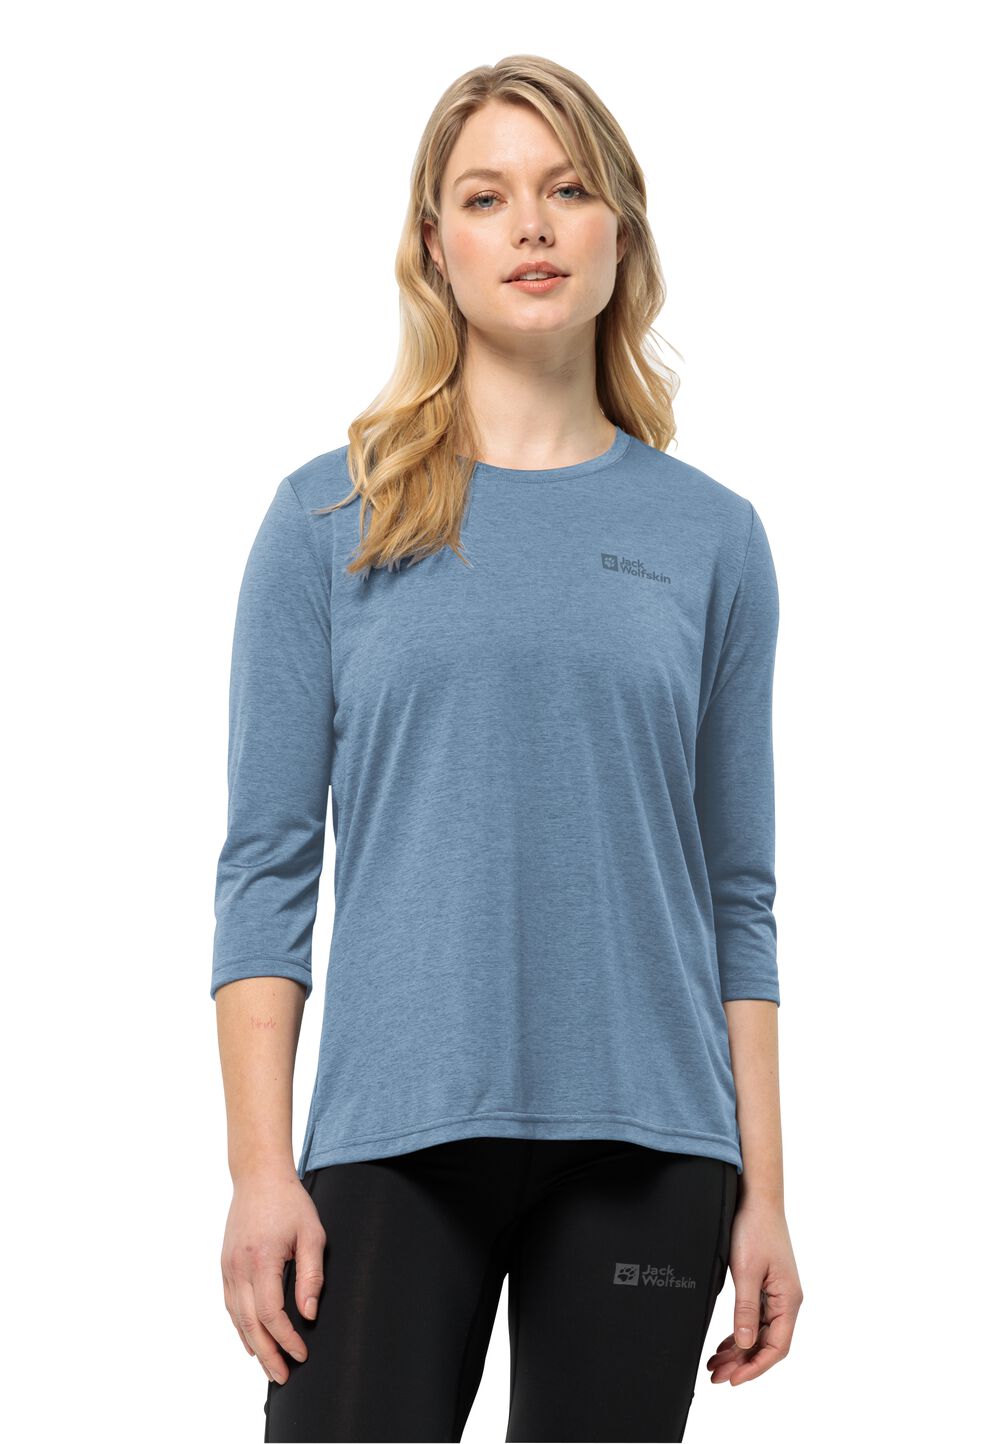 Jack Wolfskin Crosstrail 3 4 T-Shirt Women Functioneel shirt Dames XL elemental blue elemental blue